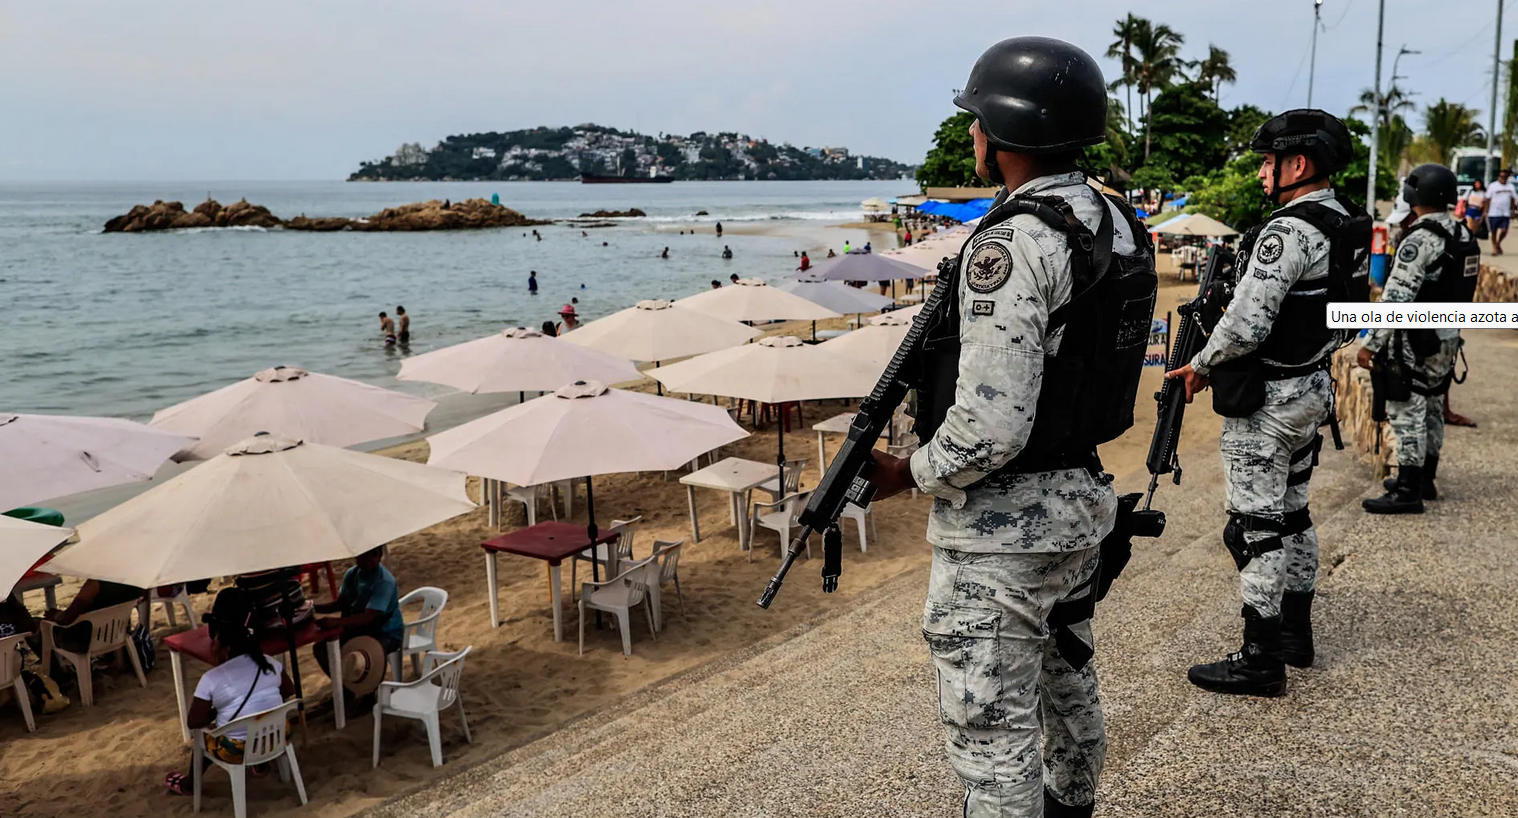 Una ola de violencia azota al turismo de Acapulco, Guerrero